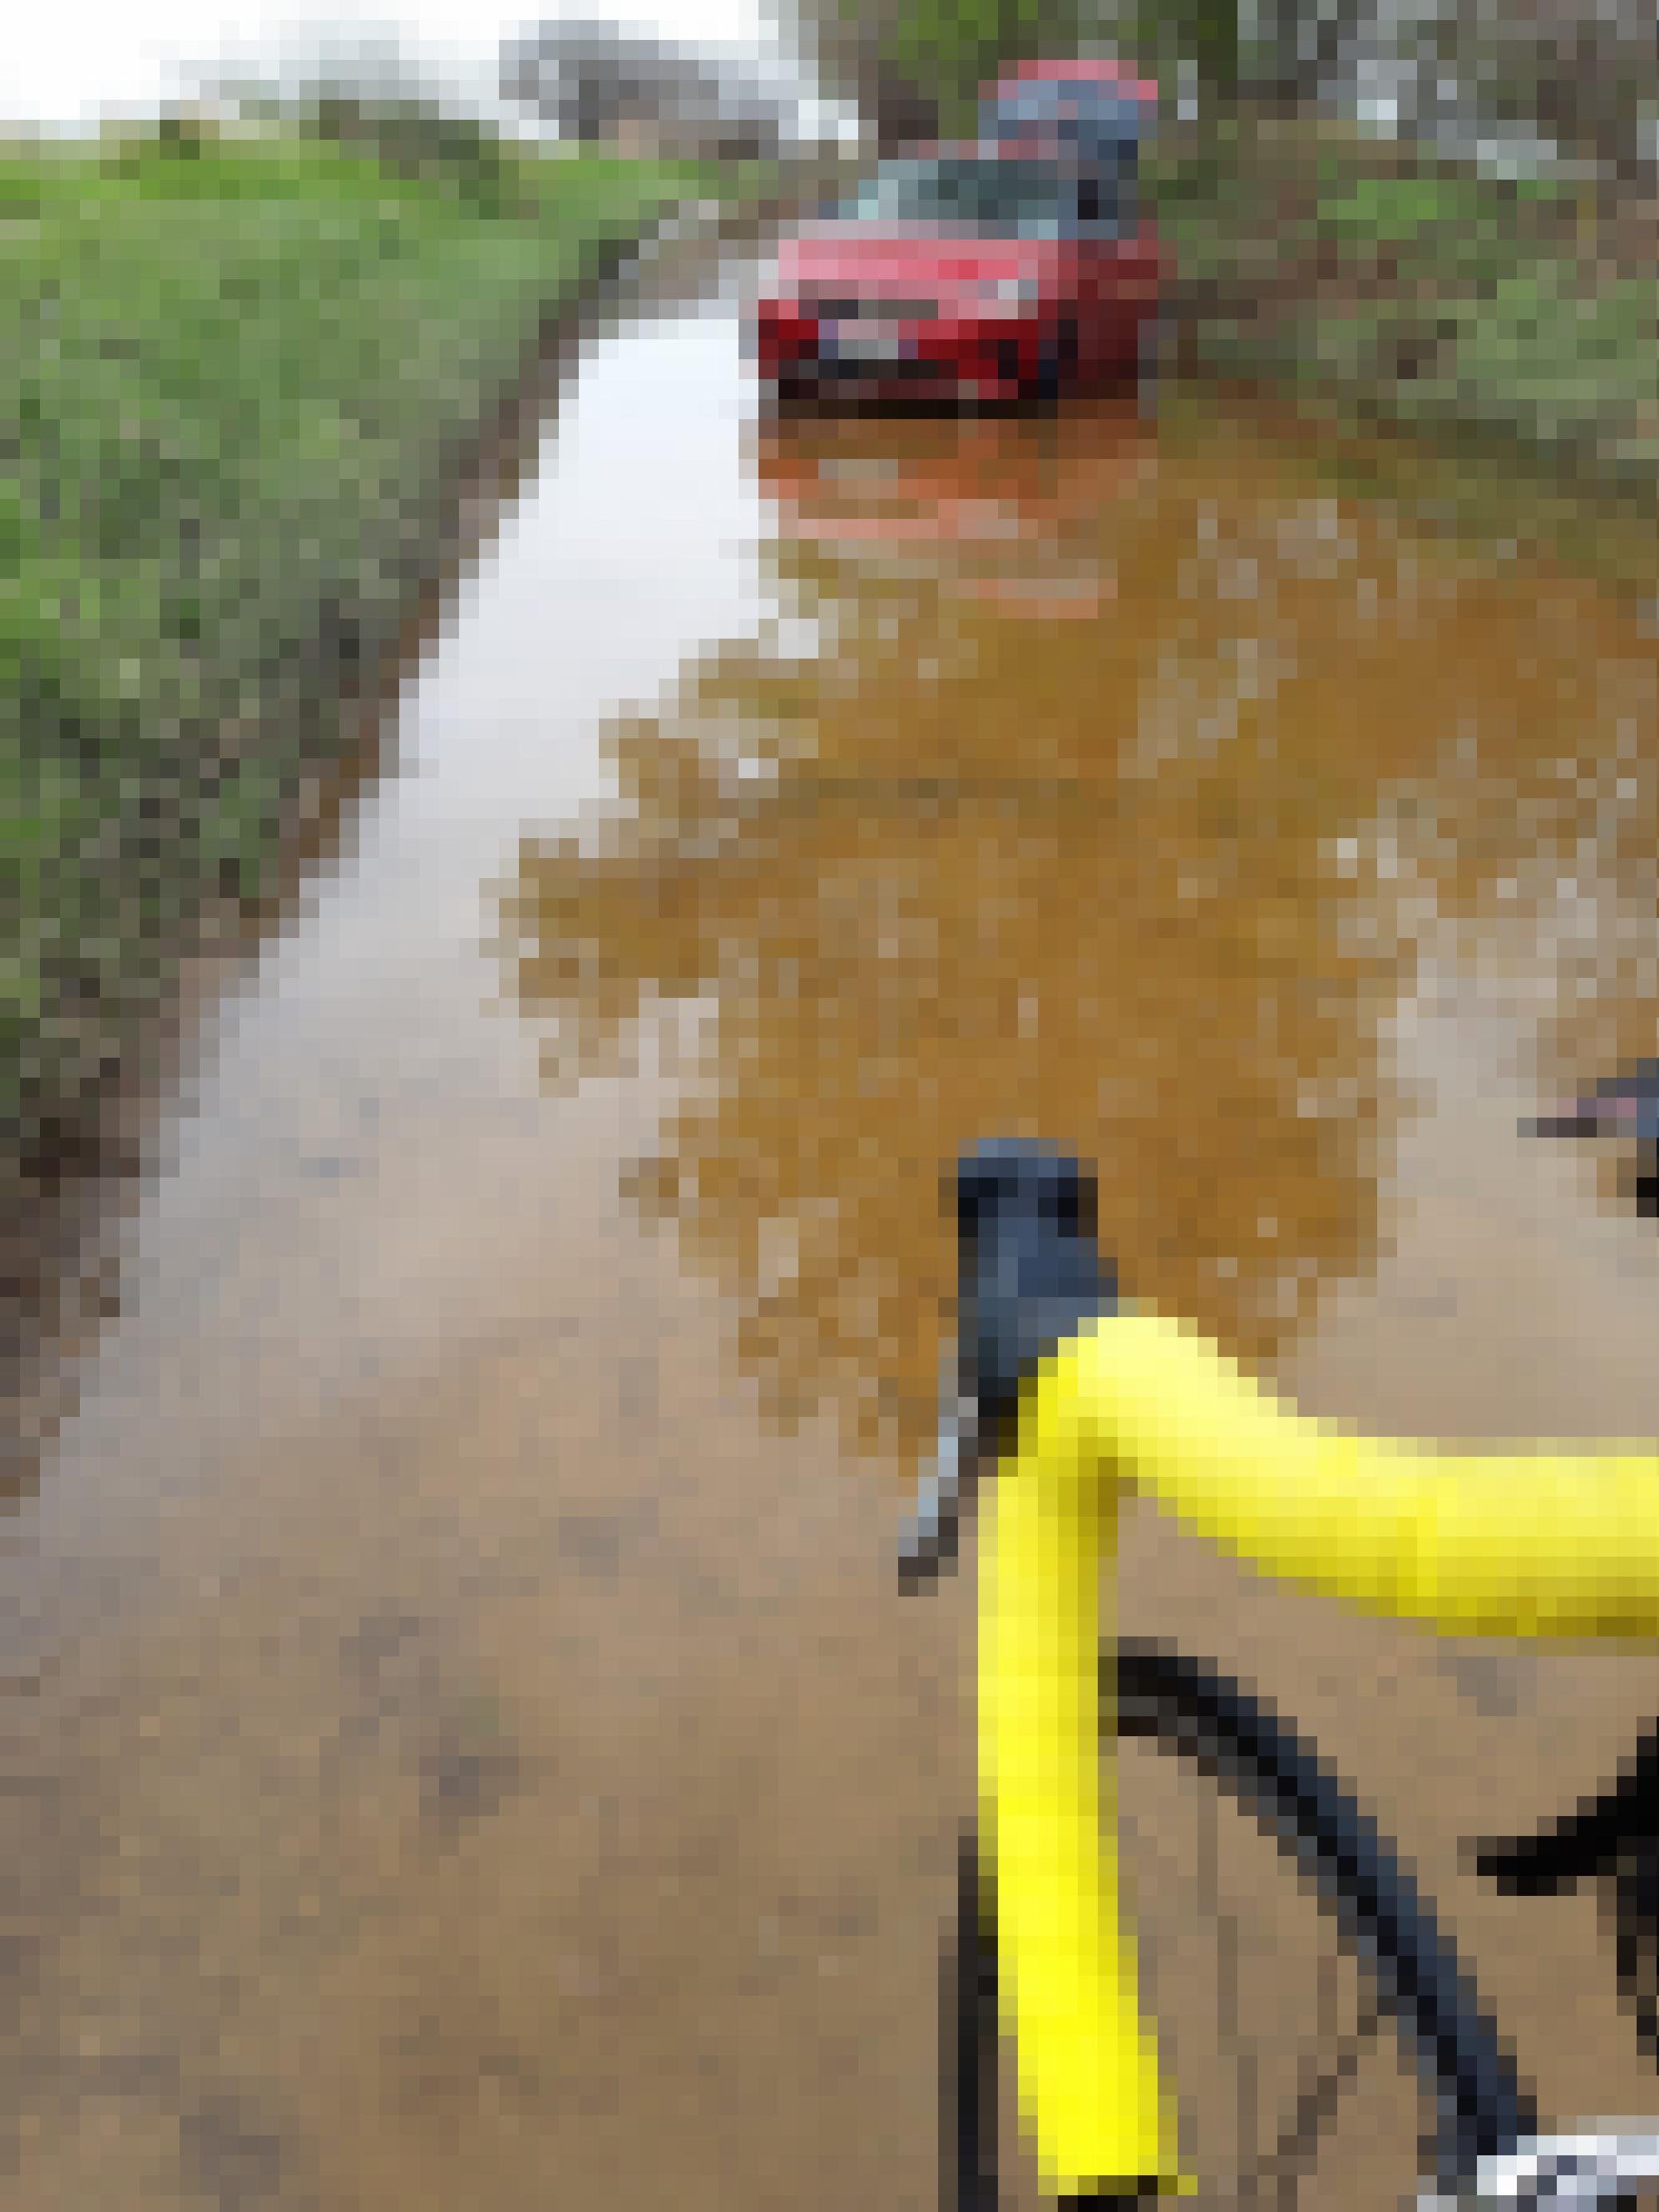 Vor dem gelben Rennradlenker zieht sich eine flussartige Wasserspur, in der weiter vorne ein rotes Auto quer steht.